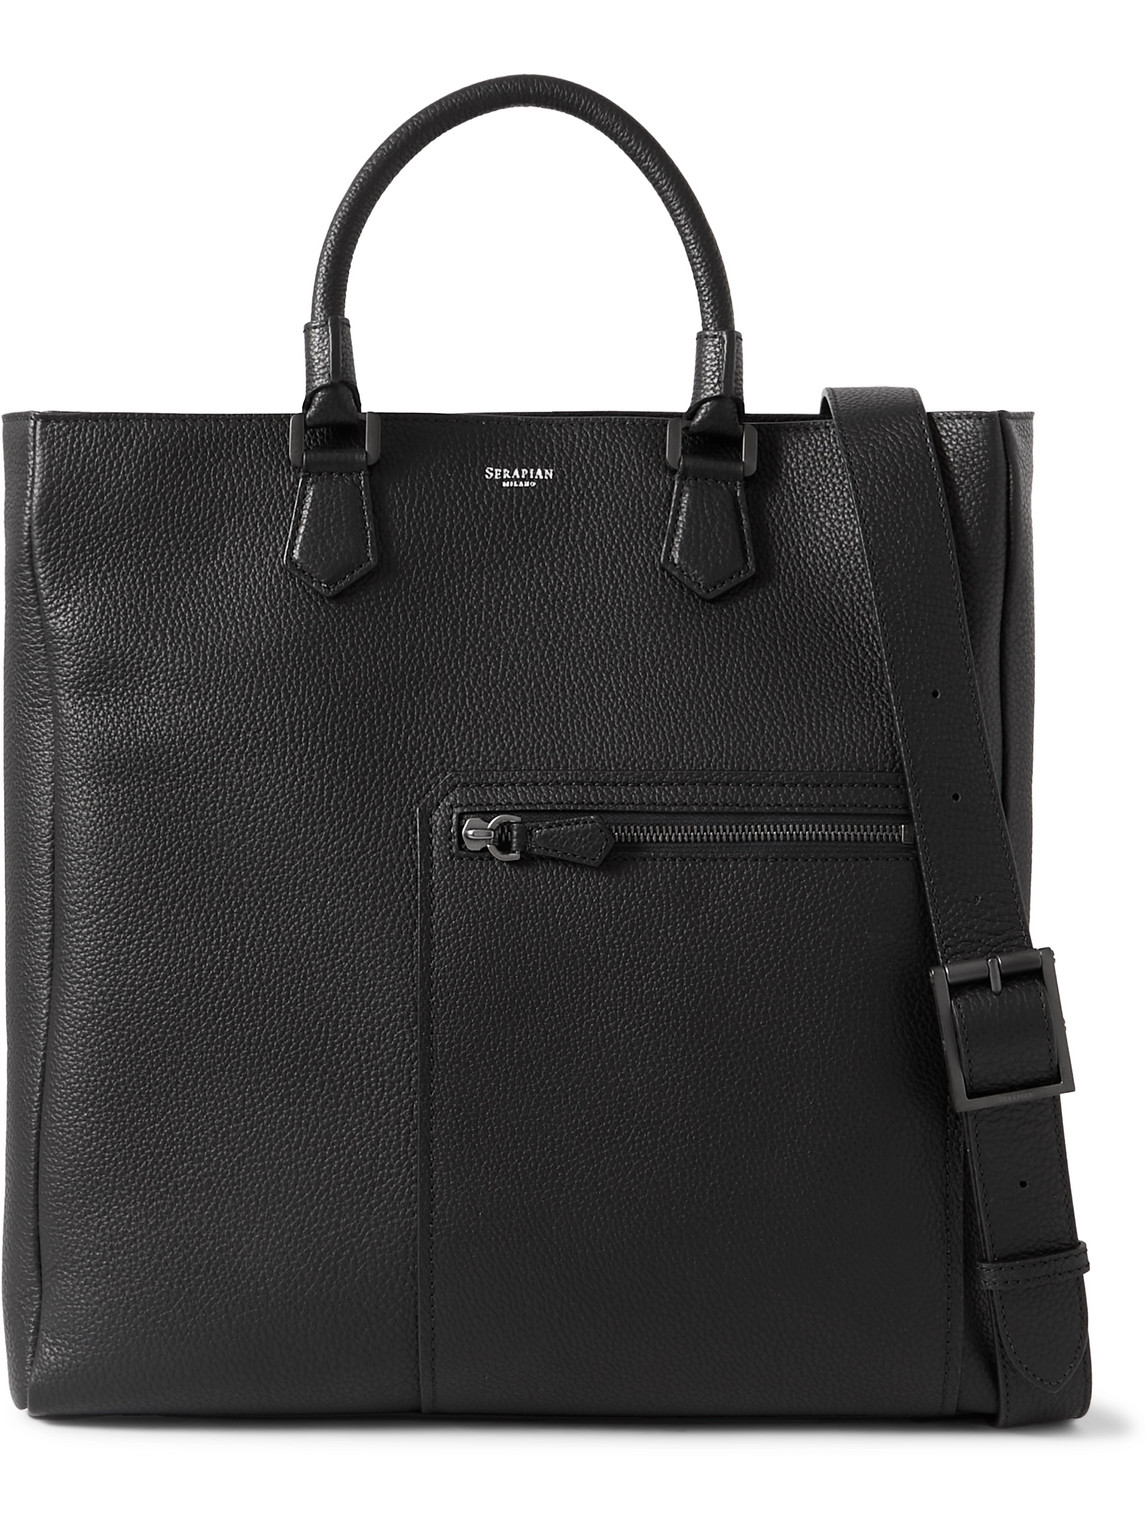 Serapian Quattordici Cachemire Full-grain Leather Tote Bag In Black